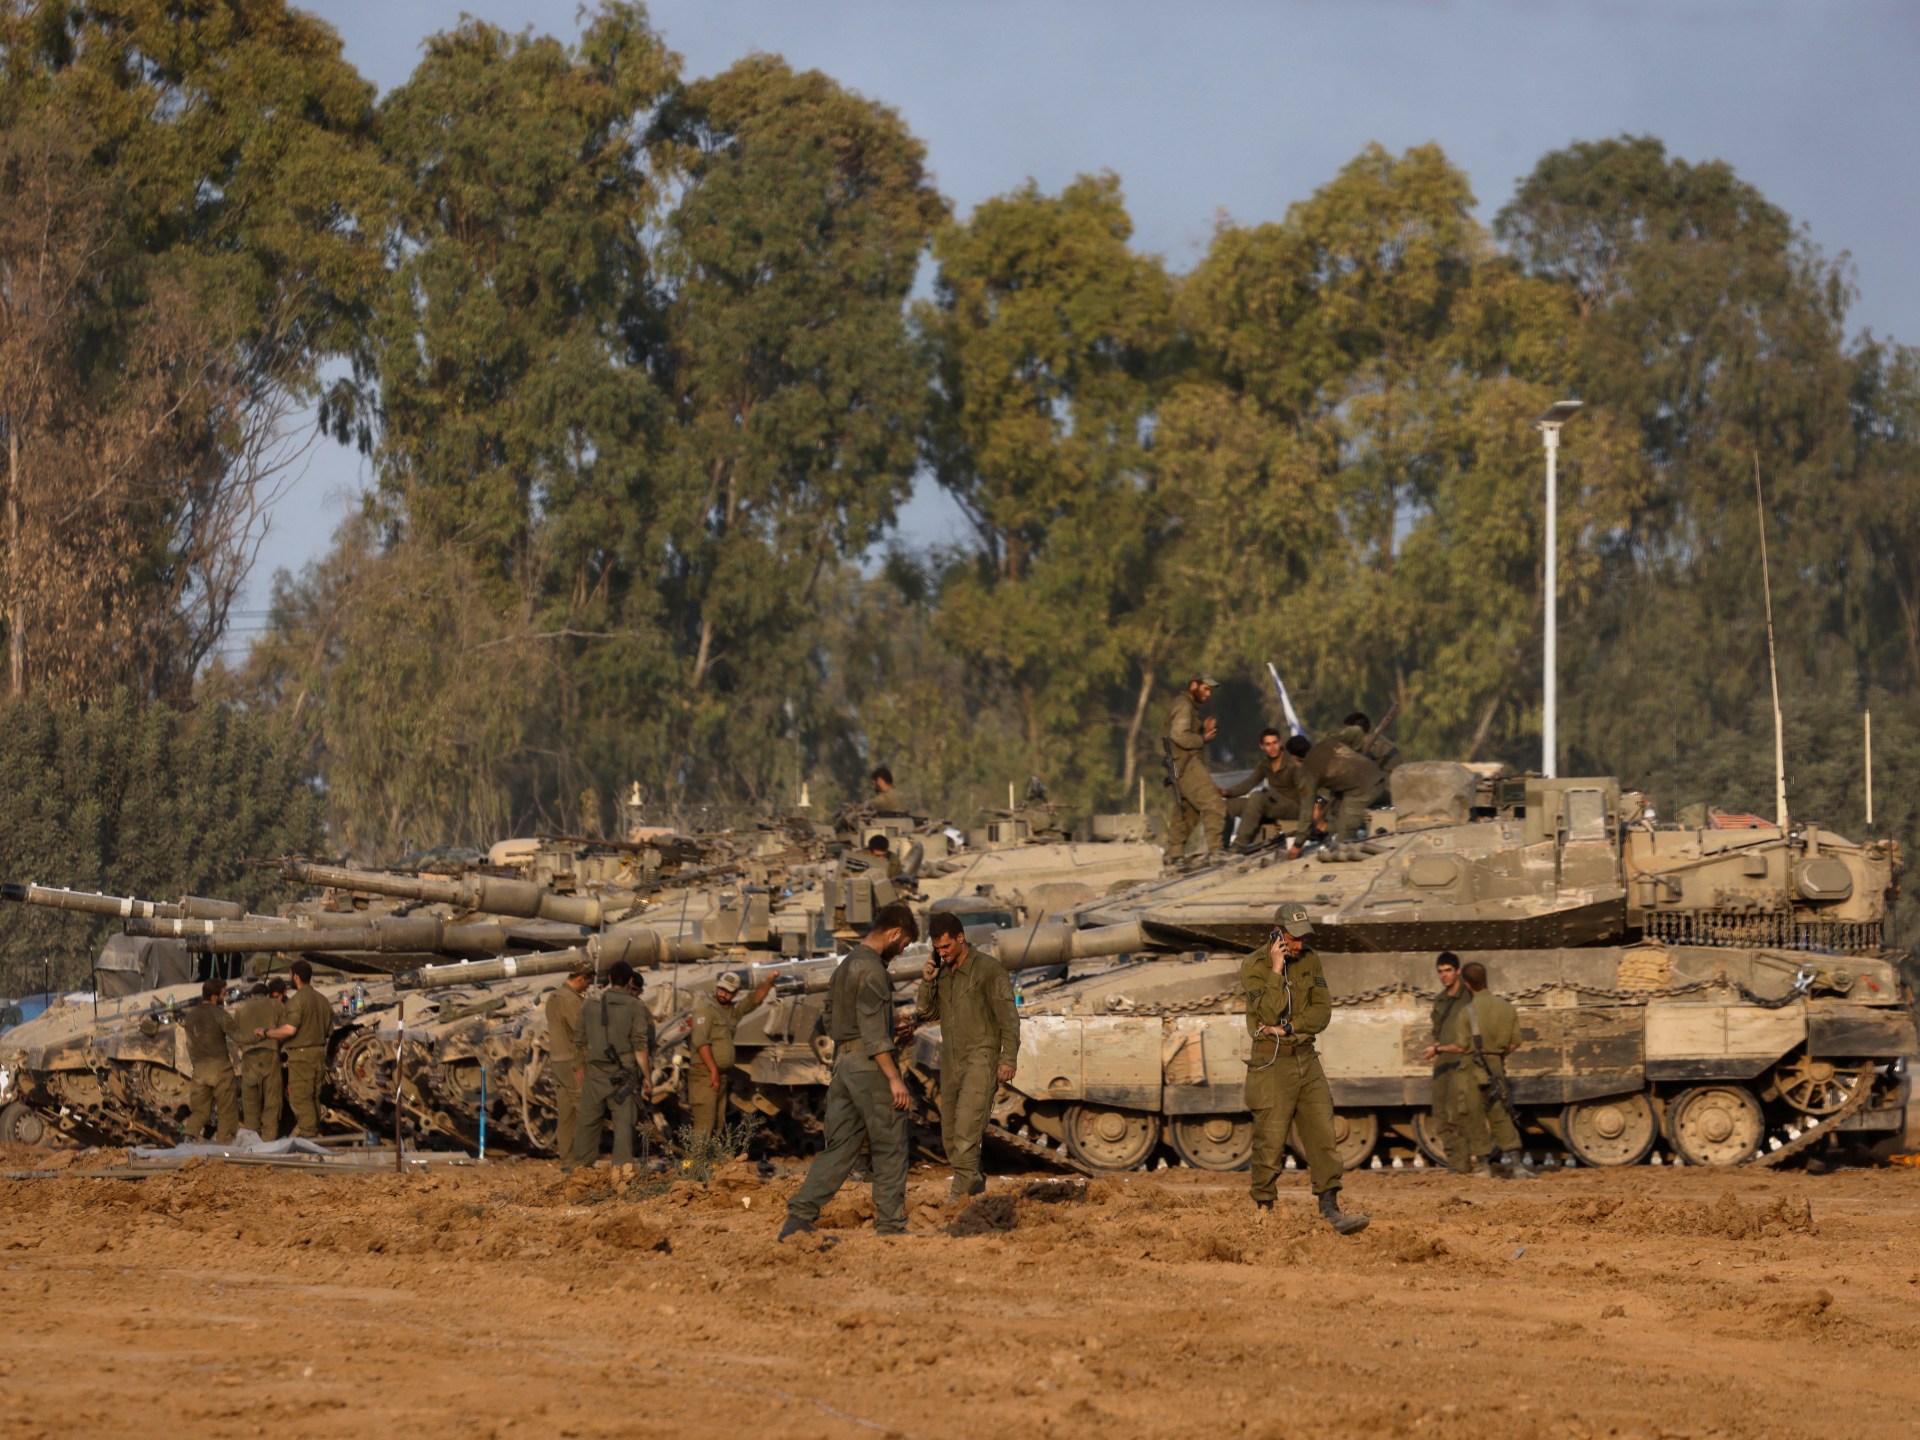 جدل حول تمويل “منح جنود الاحتياط” في إسرائيل | اقتصاد – البوكس نيوز